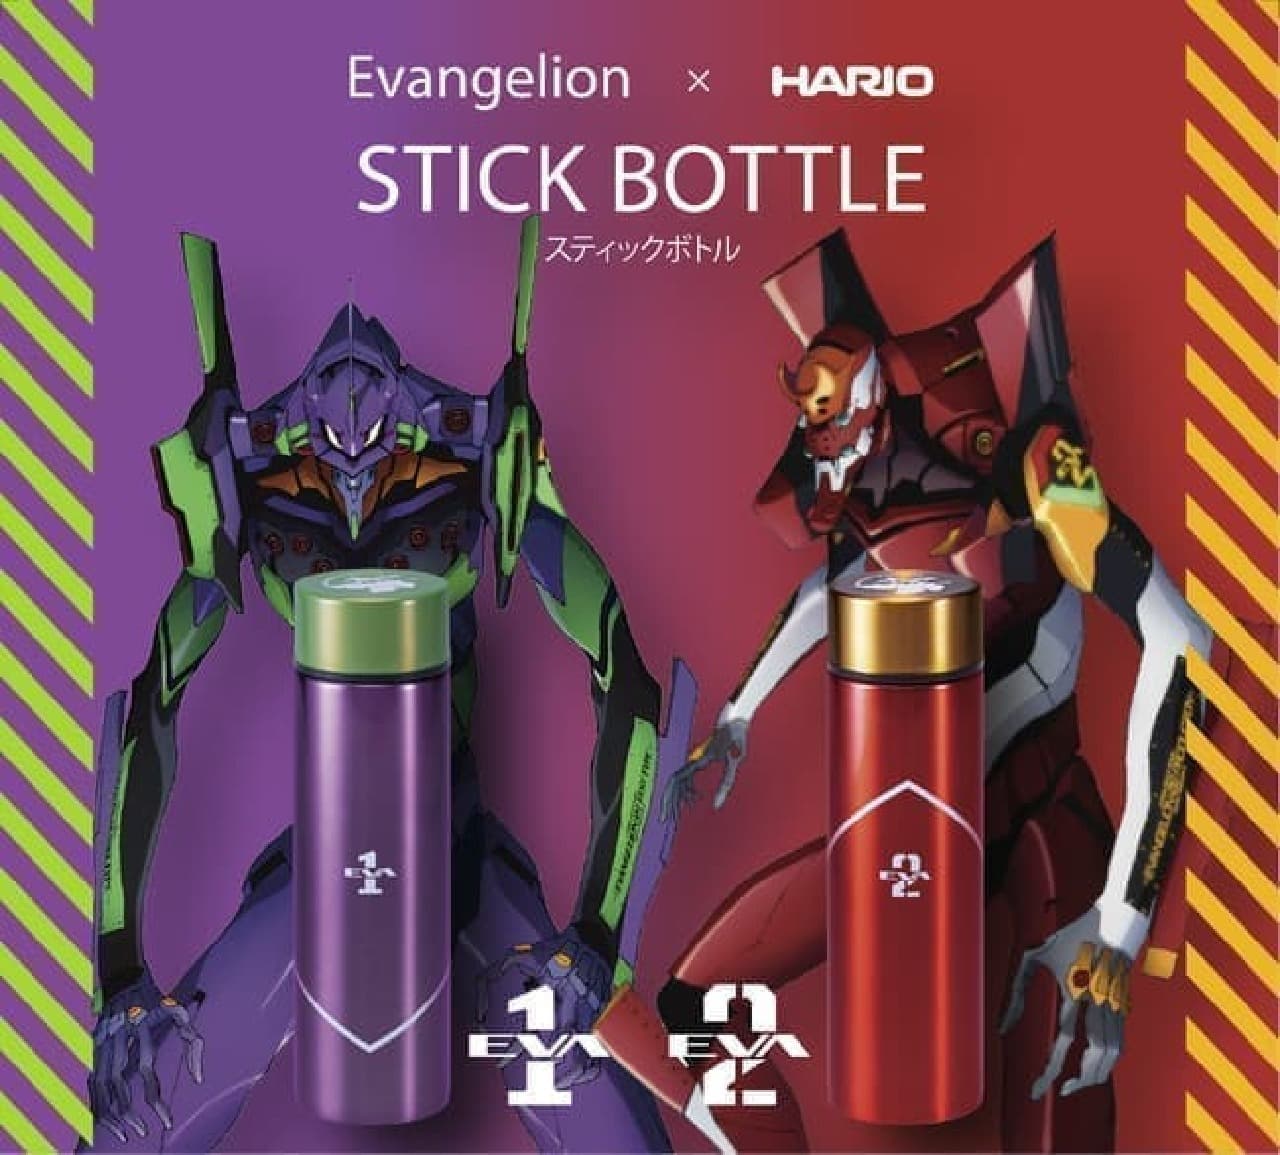 「エヴァンゲリオン×HARIO スティックボトル」発売 -- シン・エヴァンゲリオン劇場版公開を記念